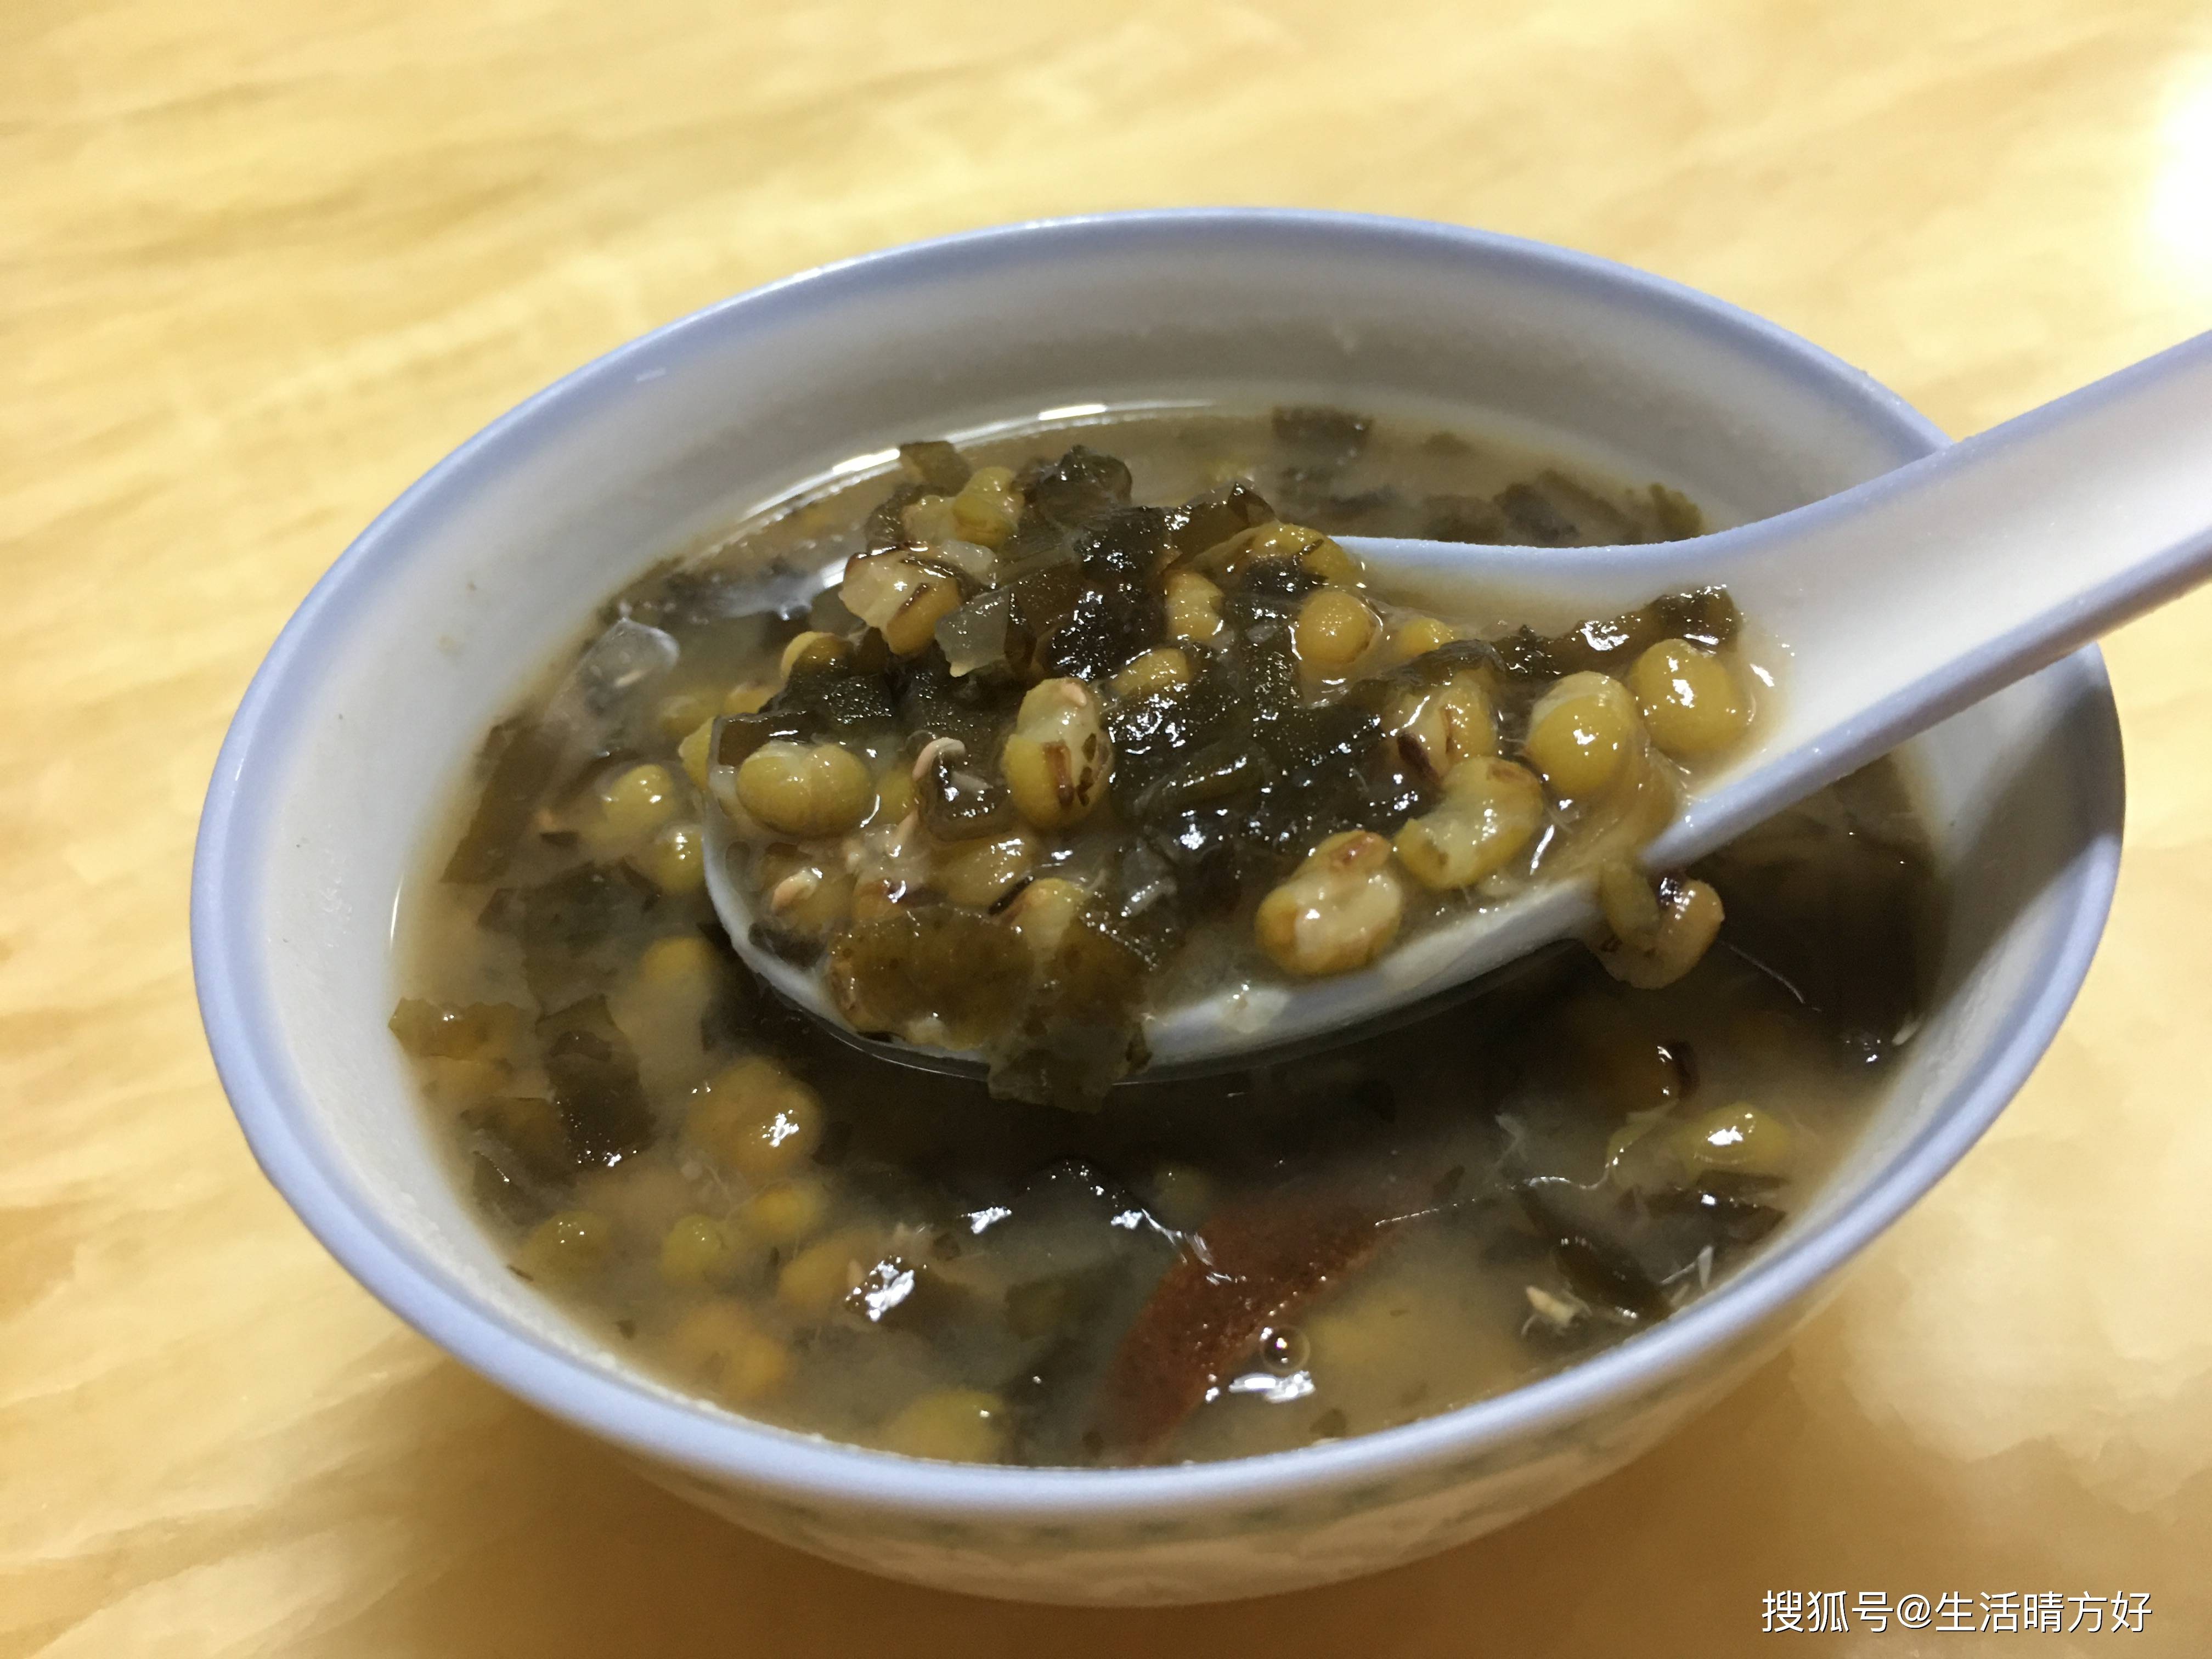 原创广东人最喜欢的经典糖水之一海带绿豆糖水做法非常简单